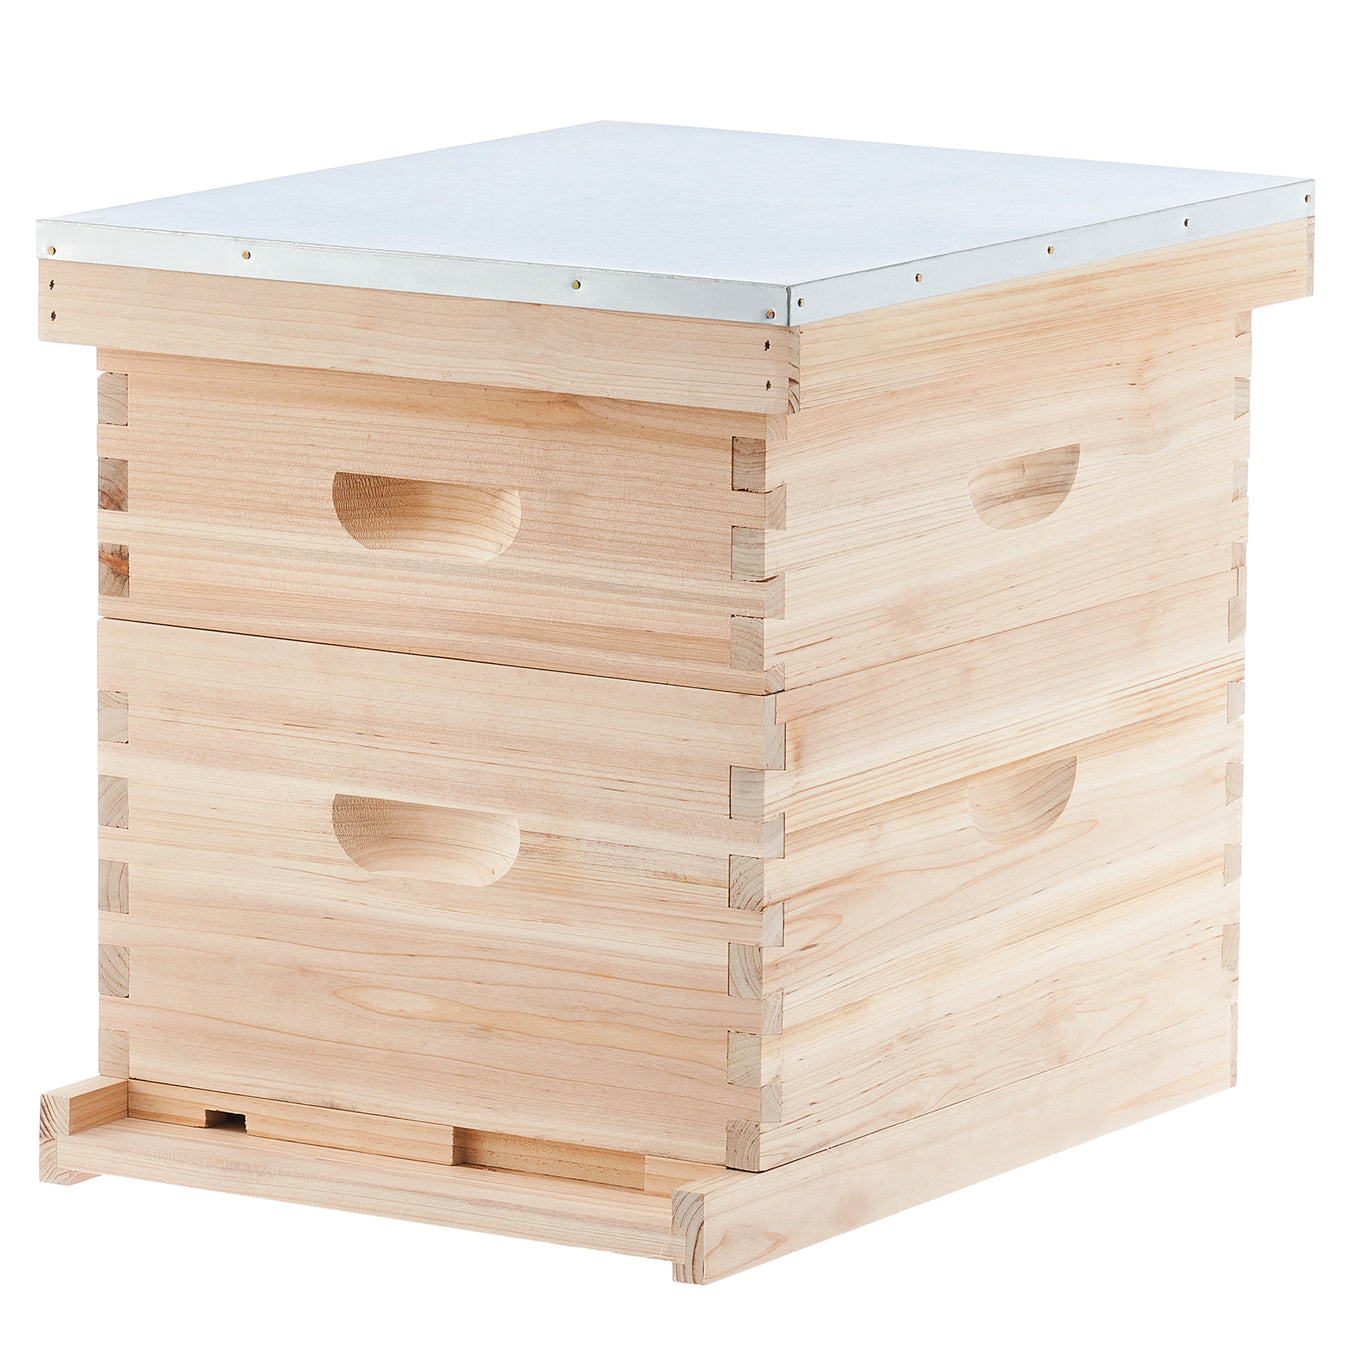 Bee Hive Box